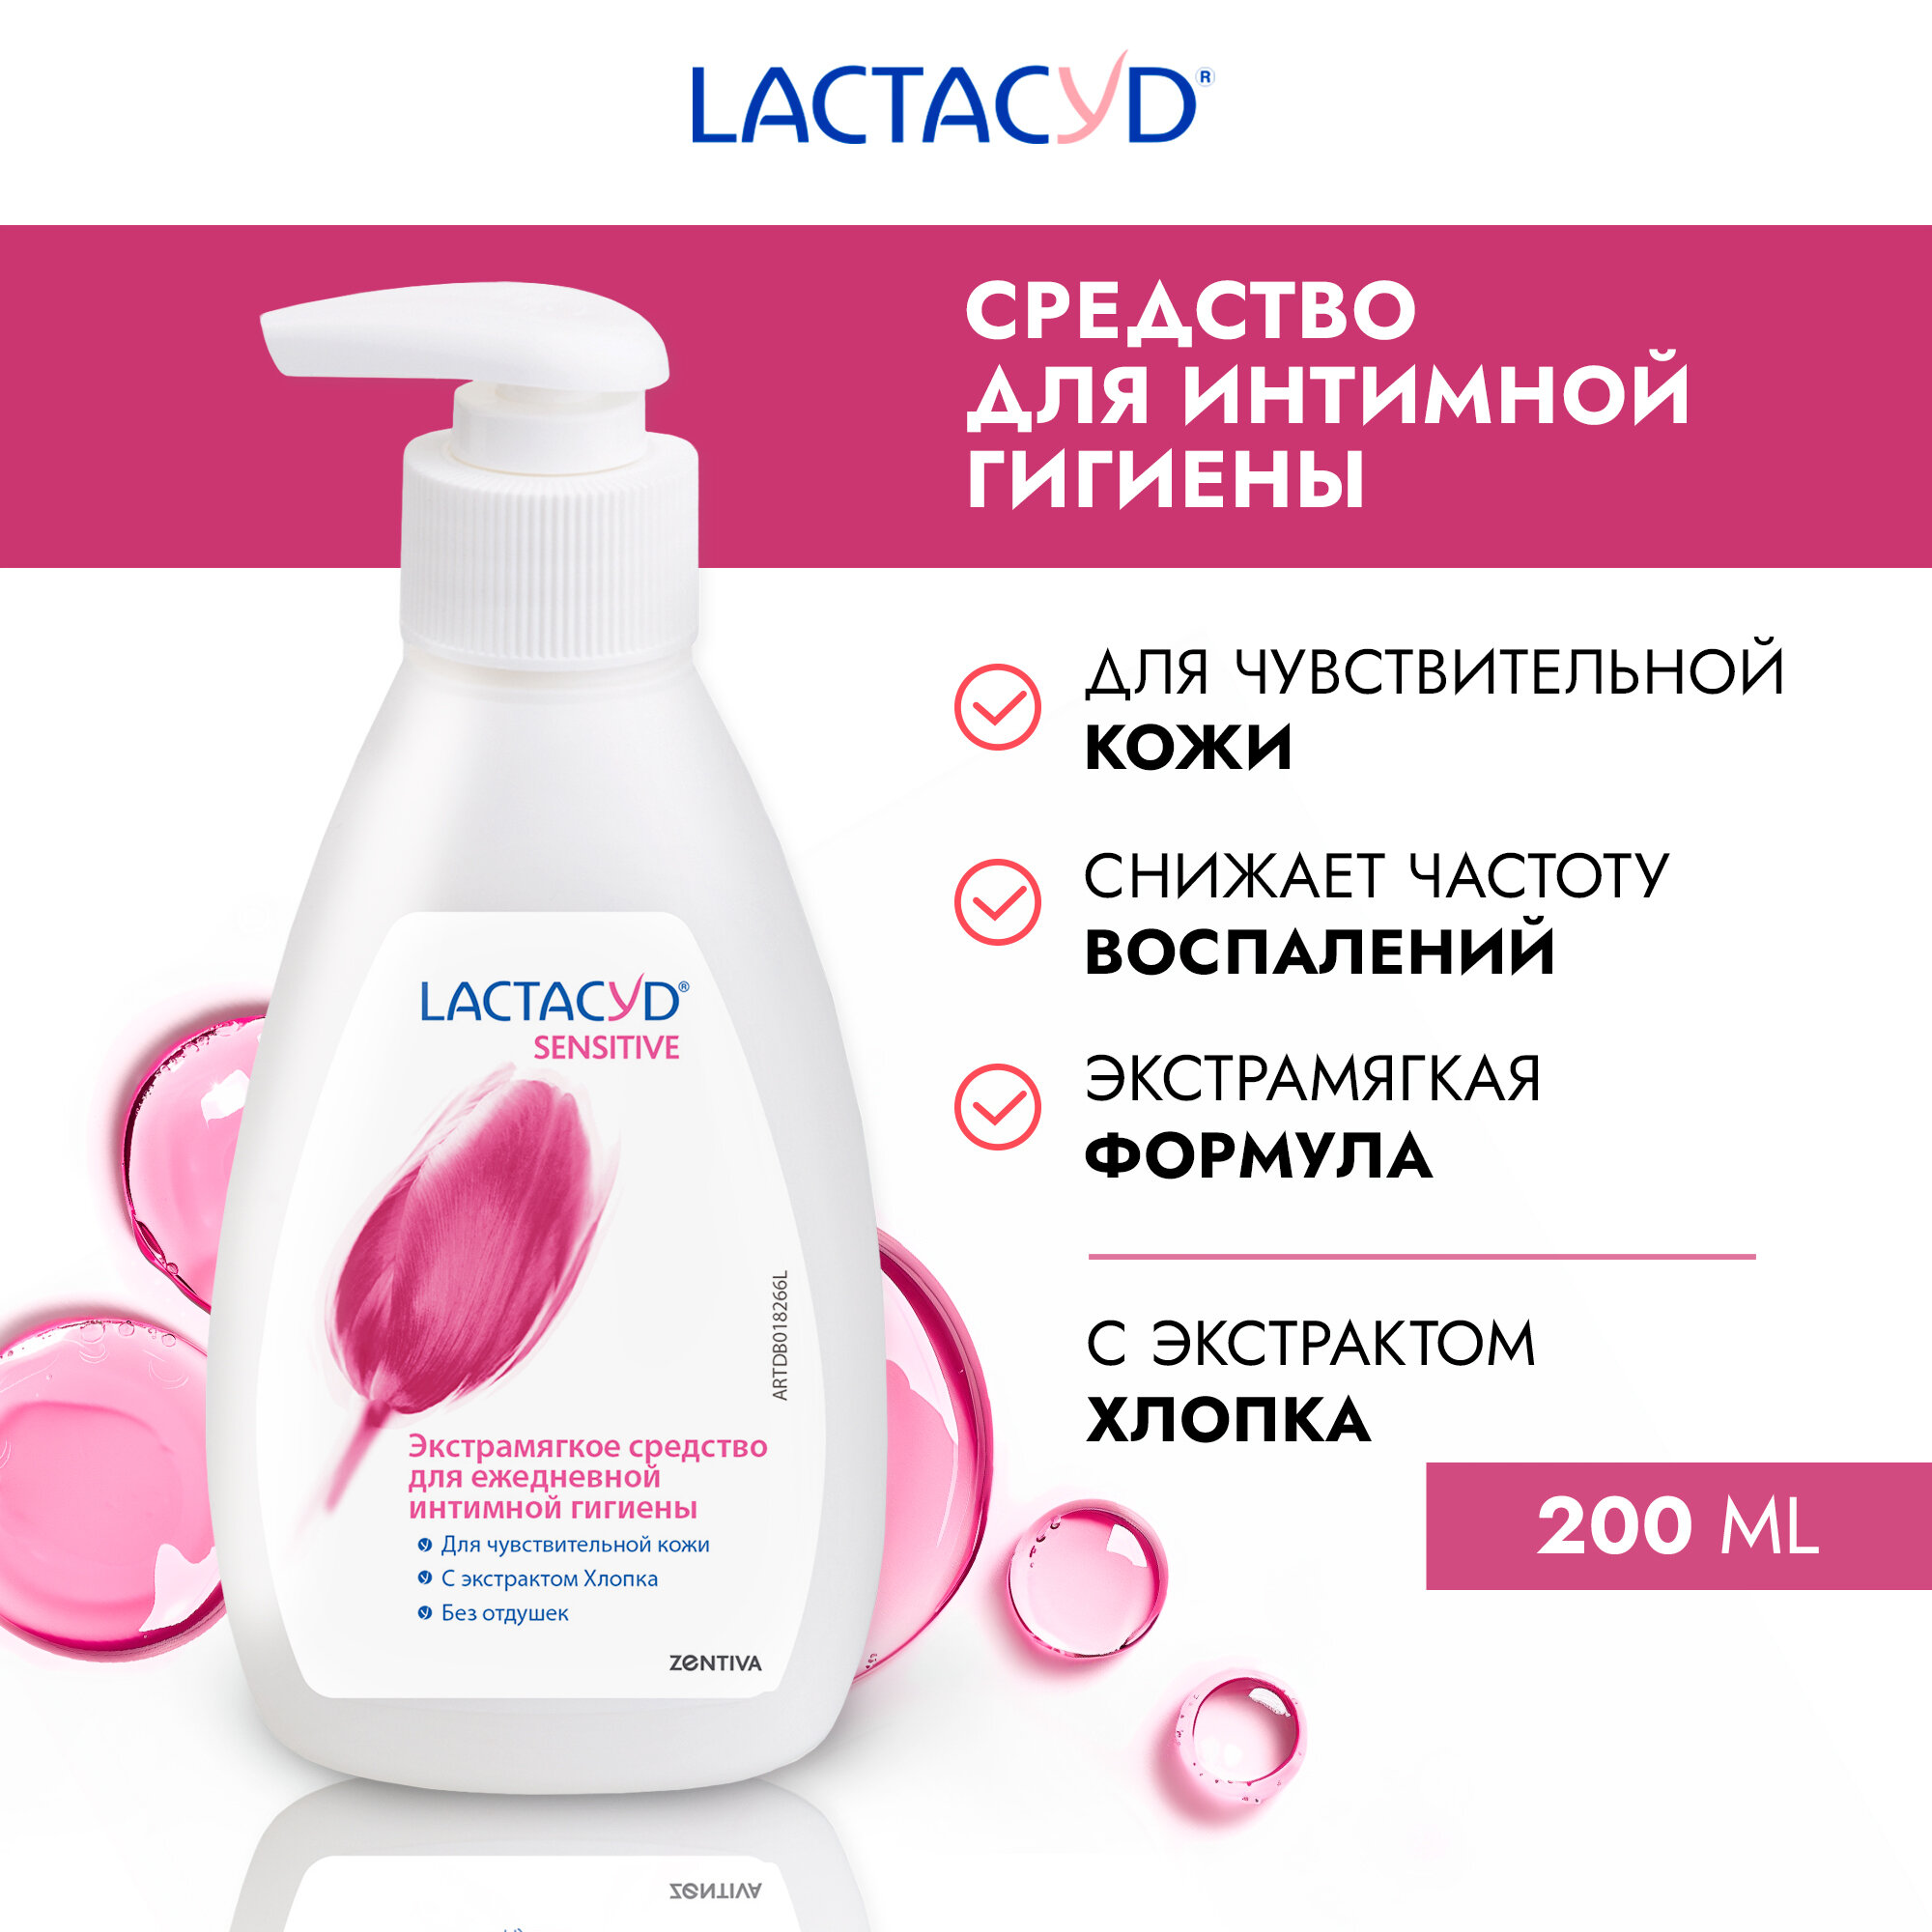 Lactasyd Sensitive гель для интимной гигиены для чувствительной кожи / нежный интимный гель для женщин успокаивающий Лактацид 200мл, pH 5.2